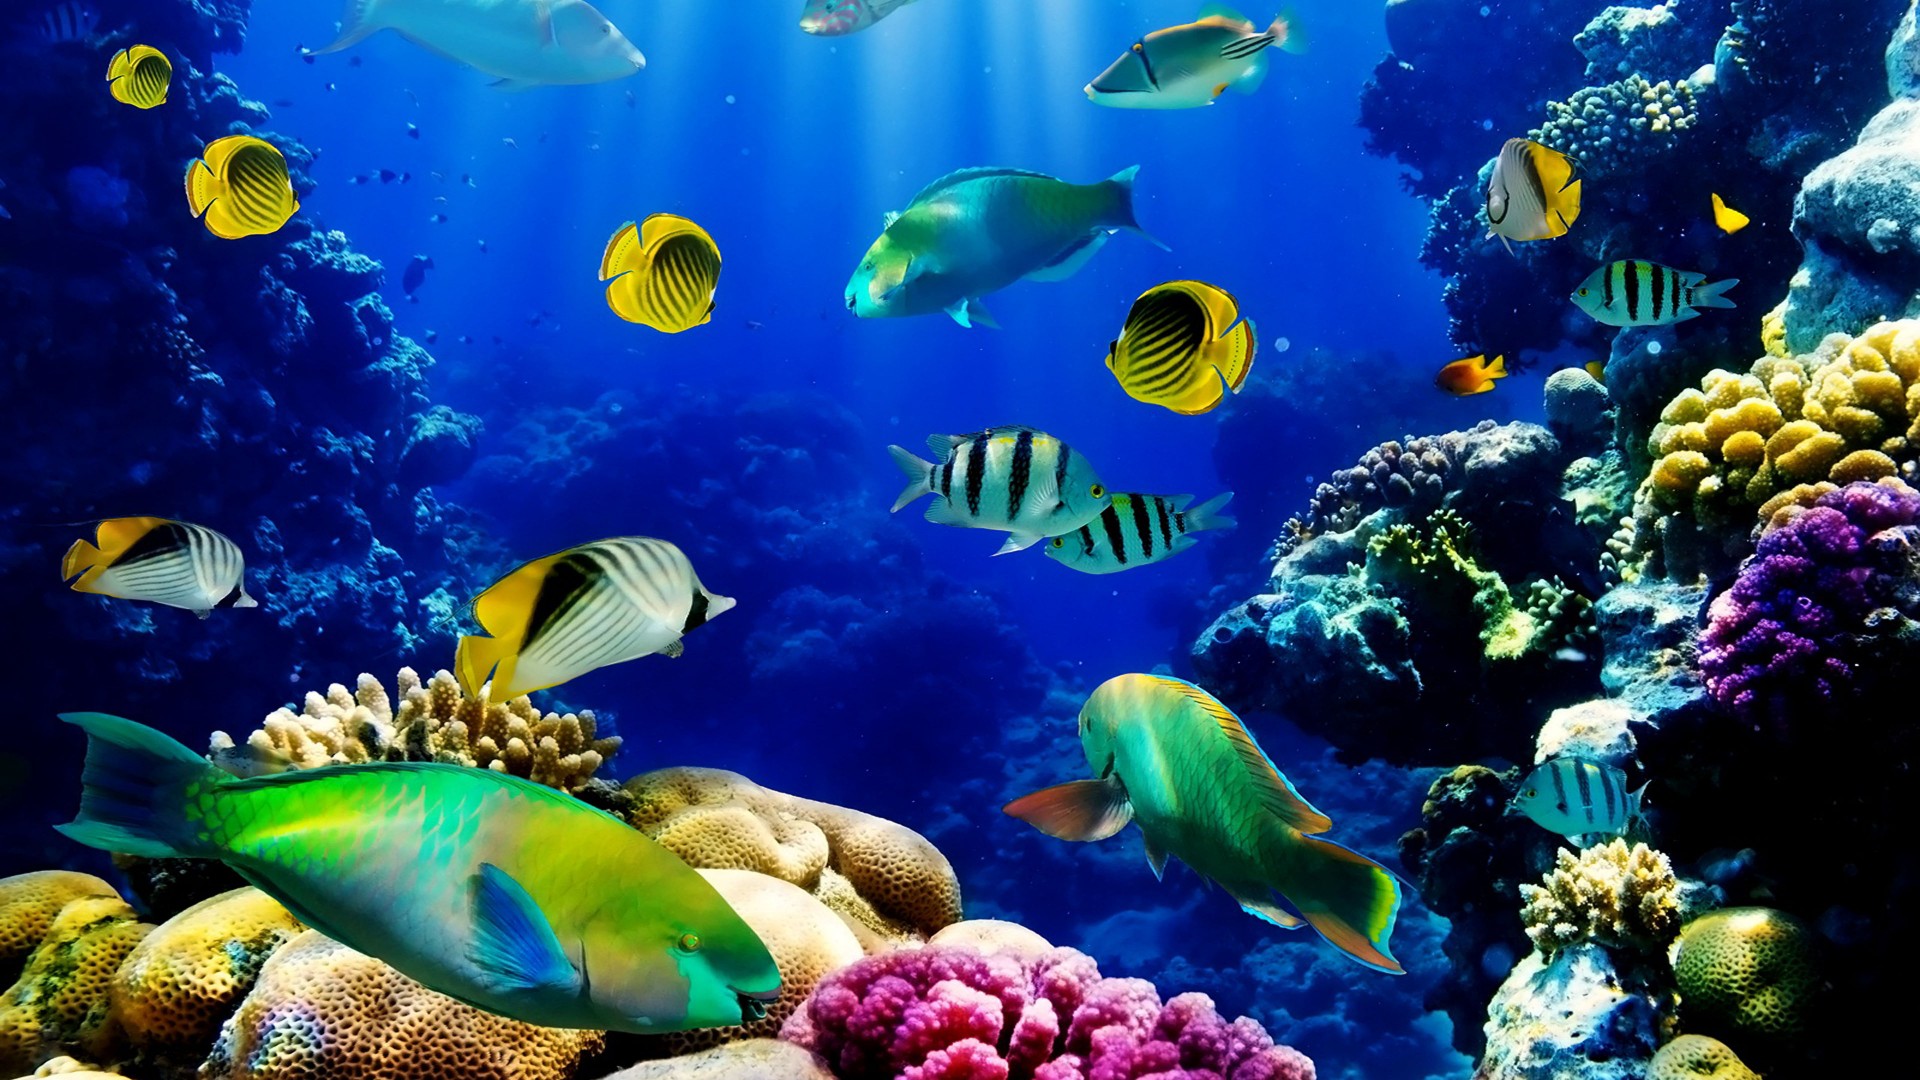 바다의 hd 라이브 배경 화면,수중,산호초,해양 생물학,산호초 물고기,암초